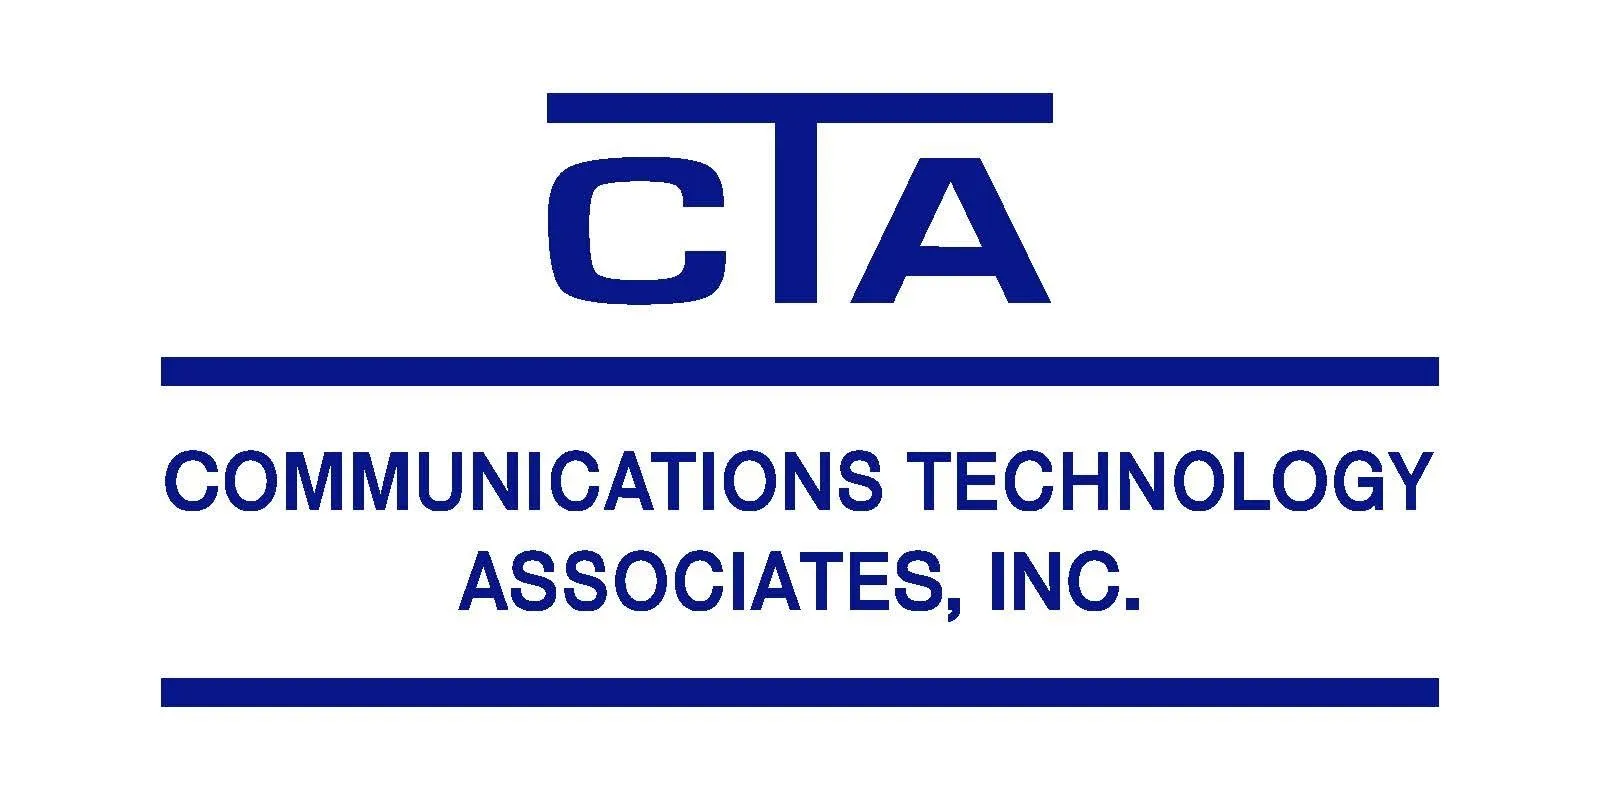 Communicatons Technology Associates